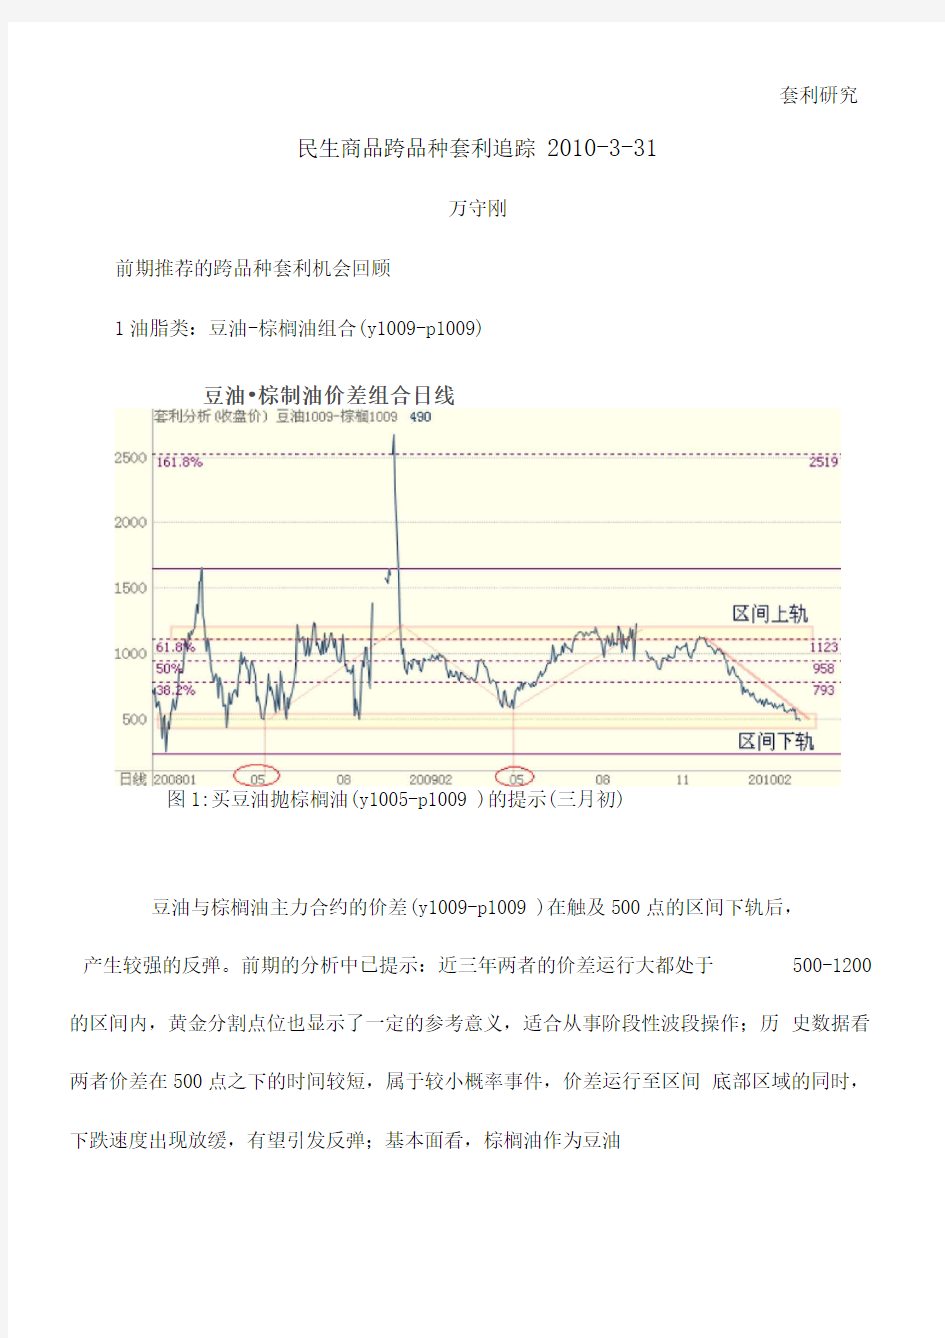 二〇〇六年铁矿石价格谈判趋势分析